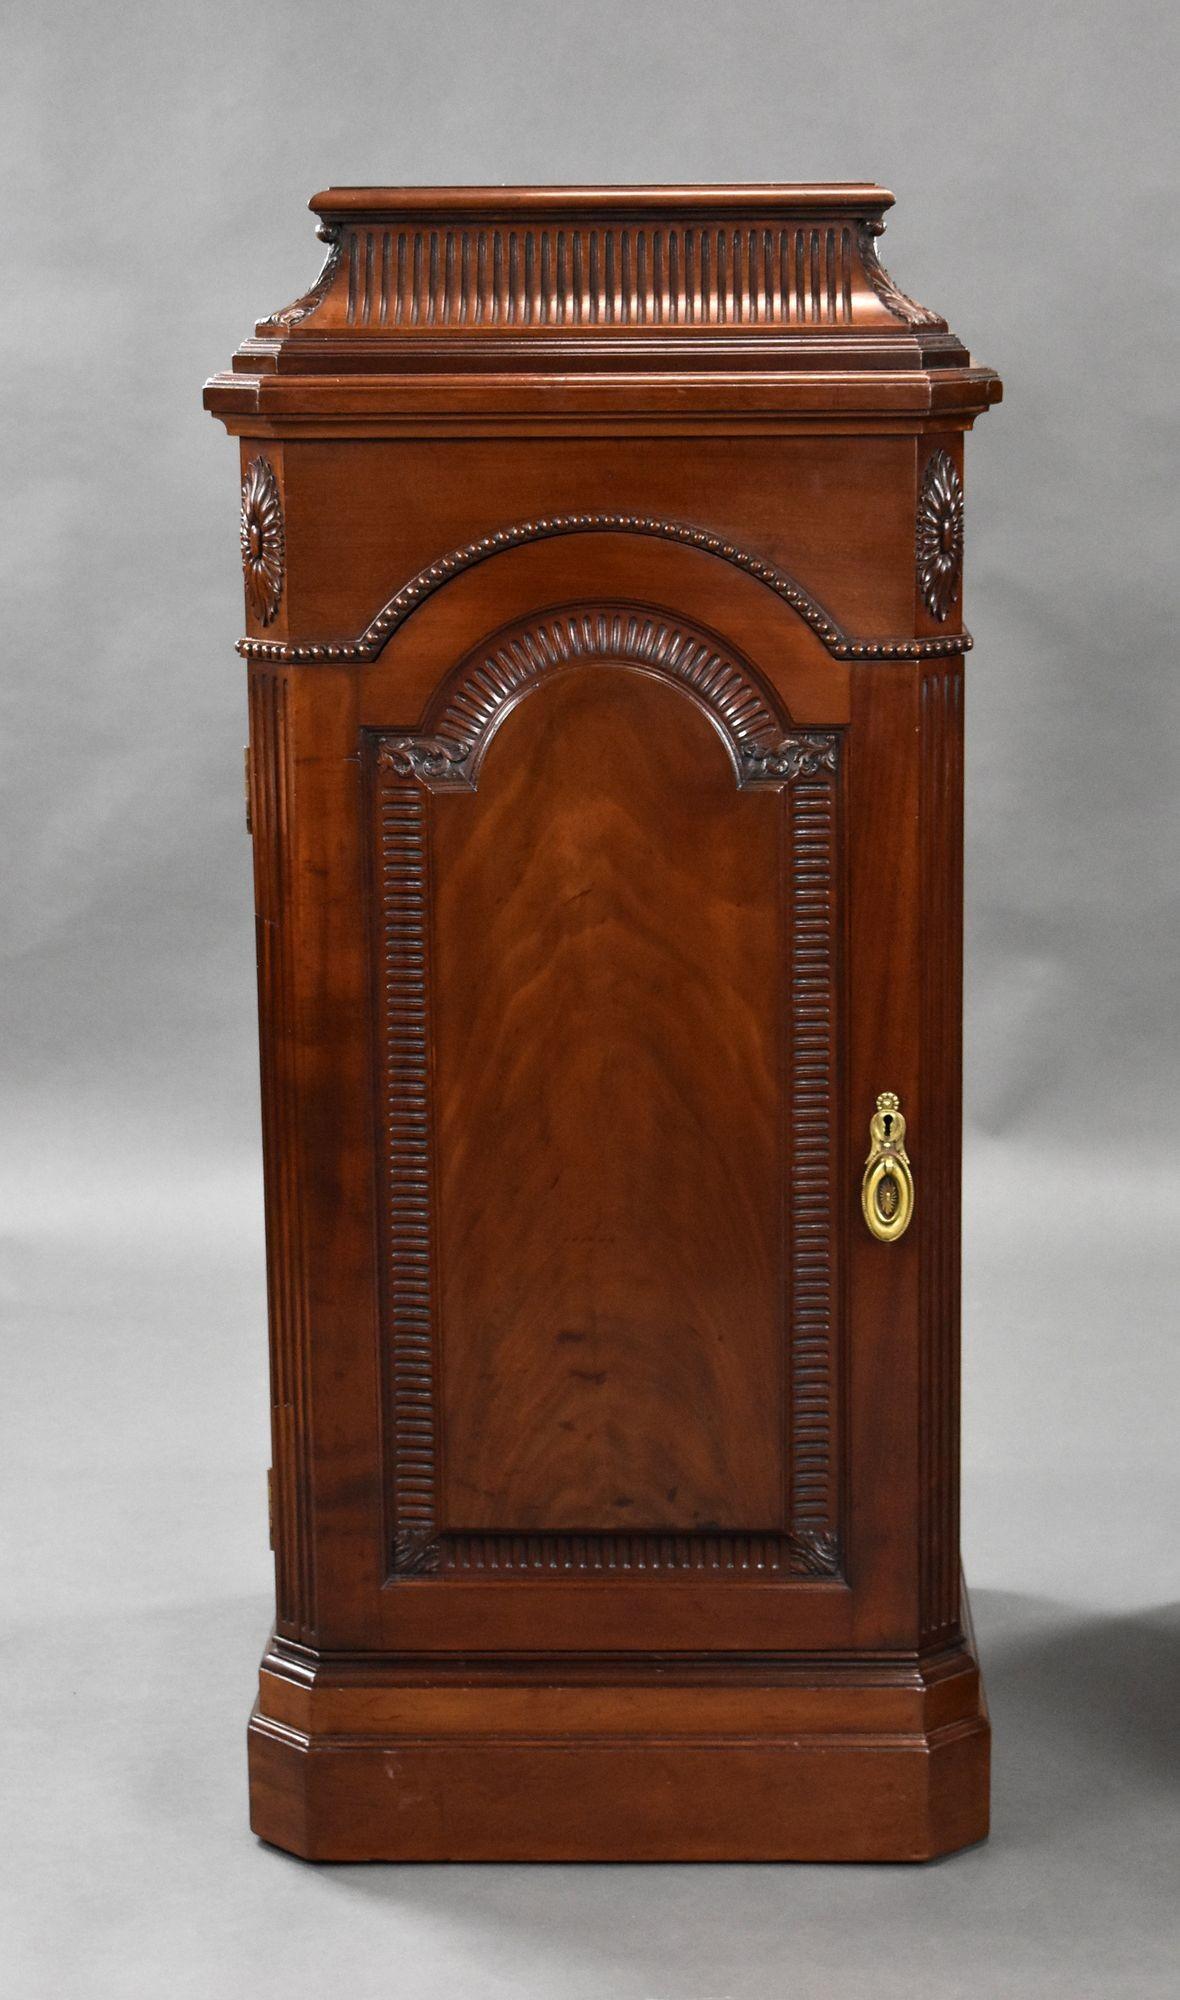 Il s'agit d'une paire de guéridons en acajou massif de bonne qualité datant du XIXe siècle. Chaque guéridon possède une porte d'armoire à panneaux s'ouvrant sur des plateaux coulissants dans l'un des cas et sur une étagère dans l'autre. Les deux